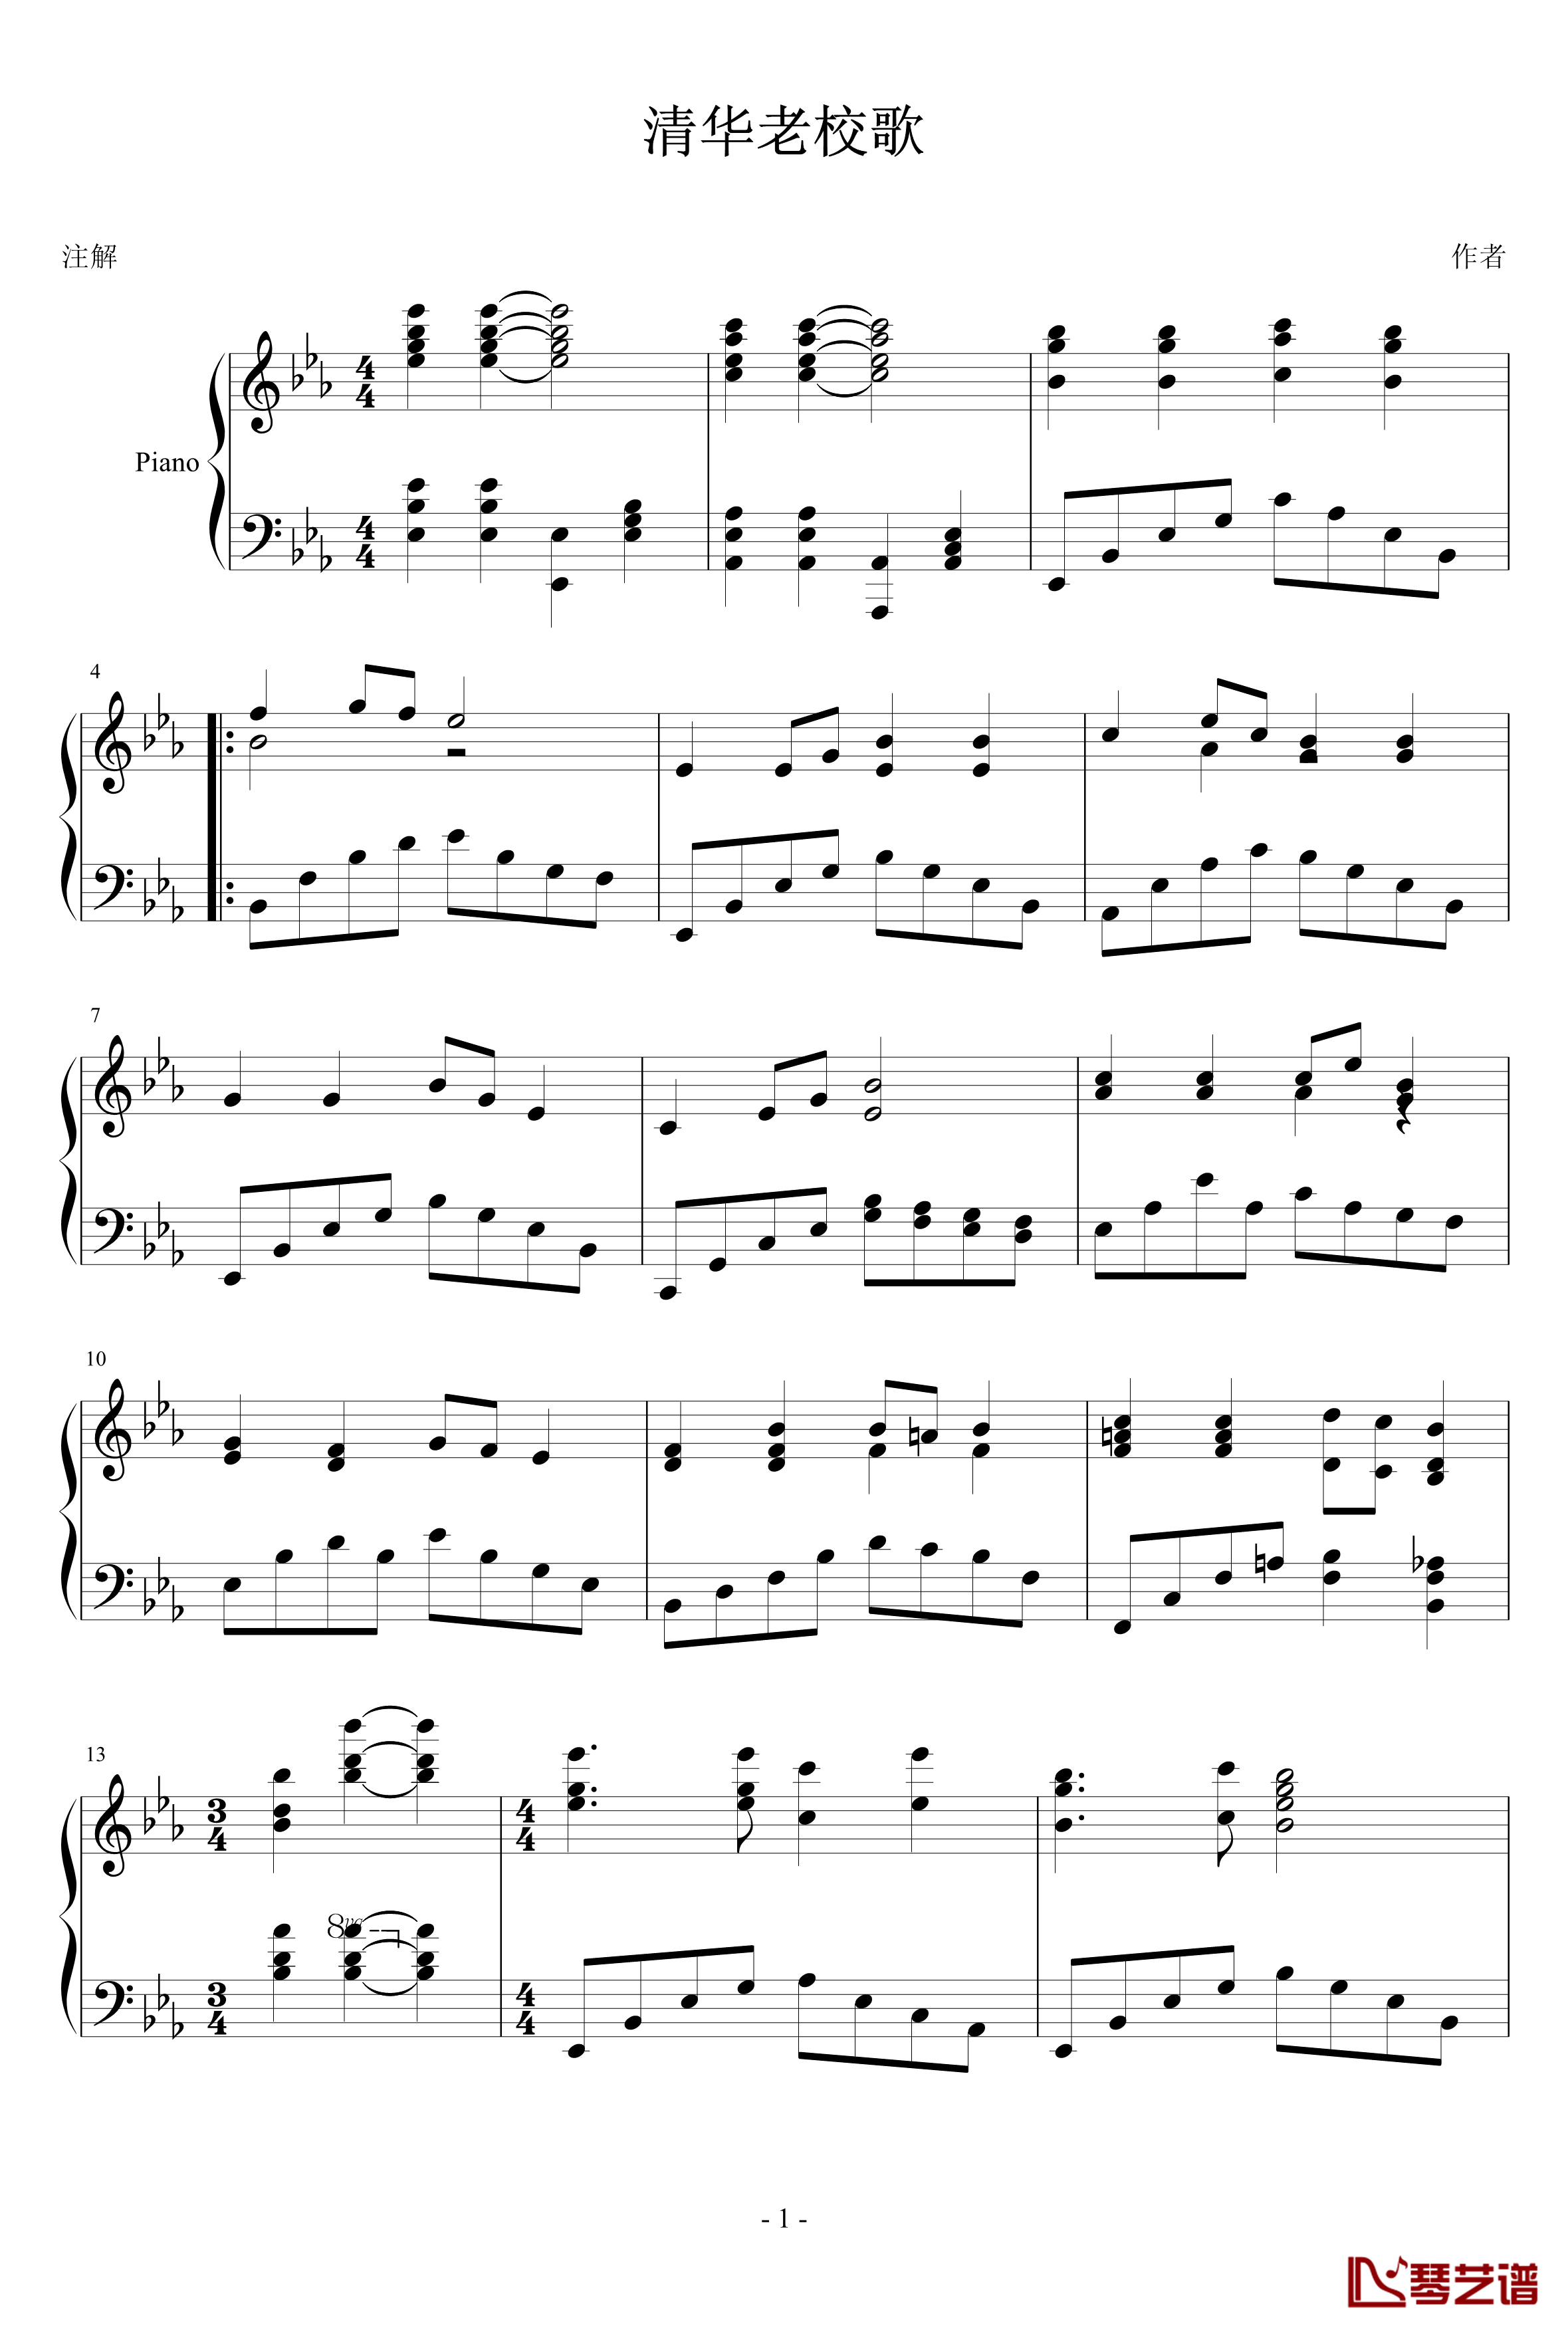 清华大学老校歌钢琴谱-降E调-PARROT1861